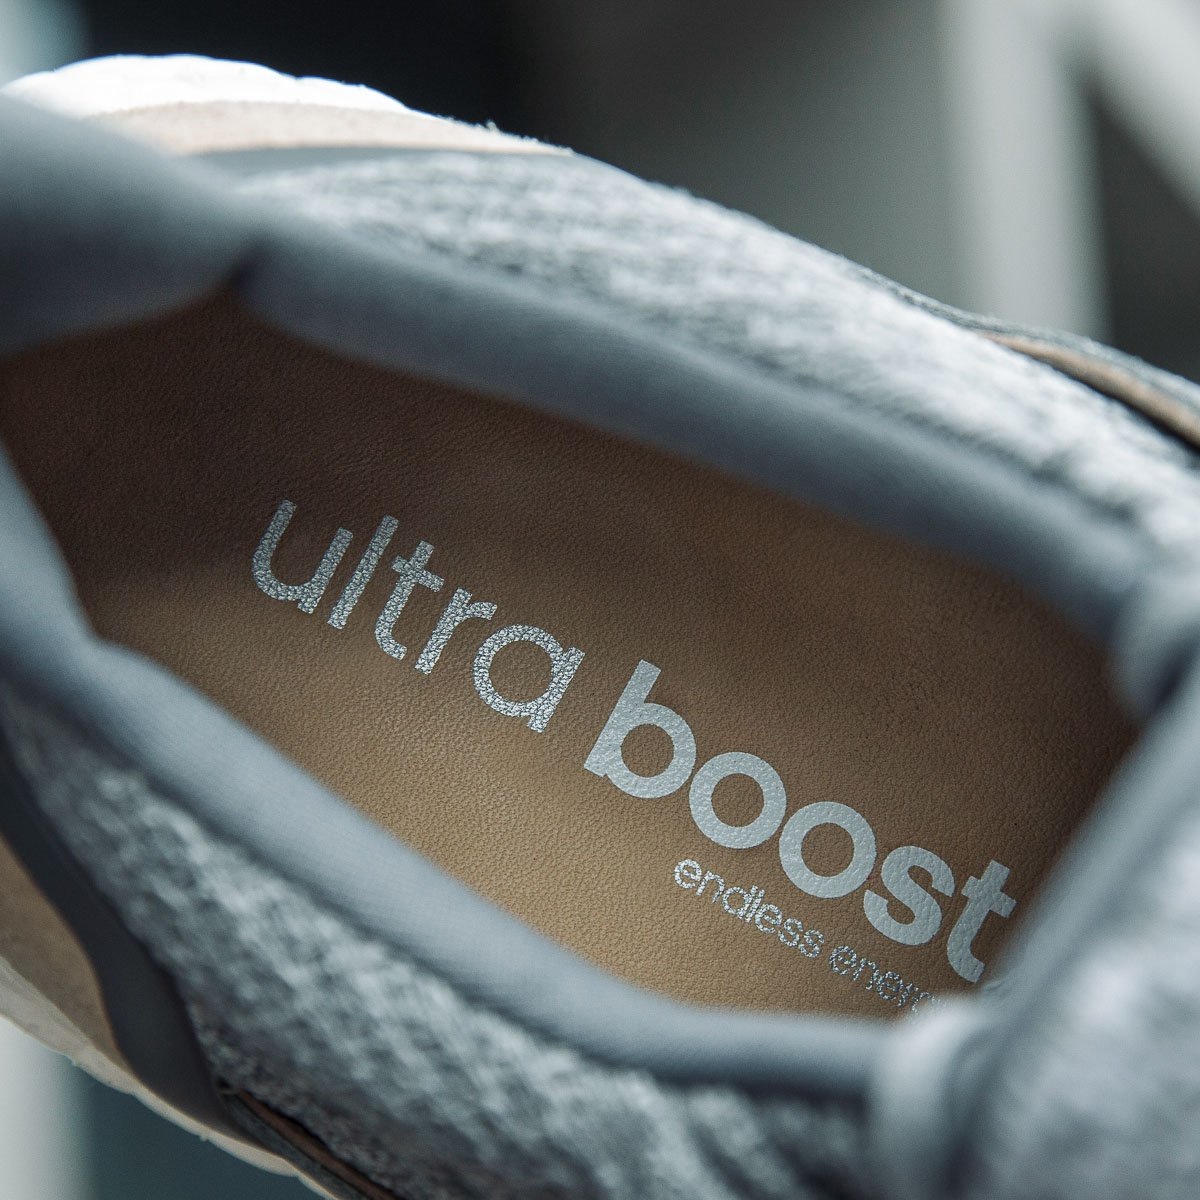 adidas Ultra Boost 3.0 Oreo Zebra 2017 Black White Ultraboost 